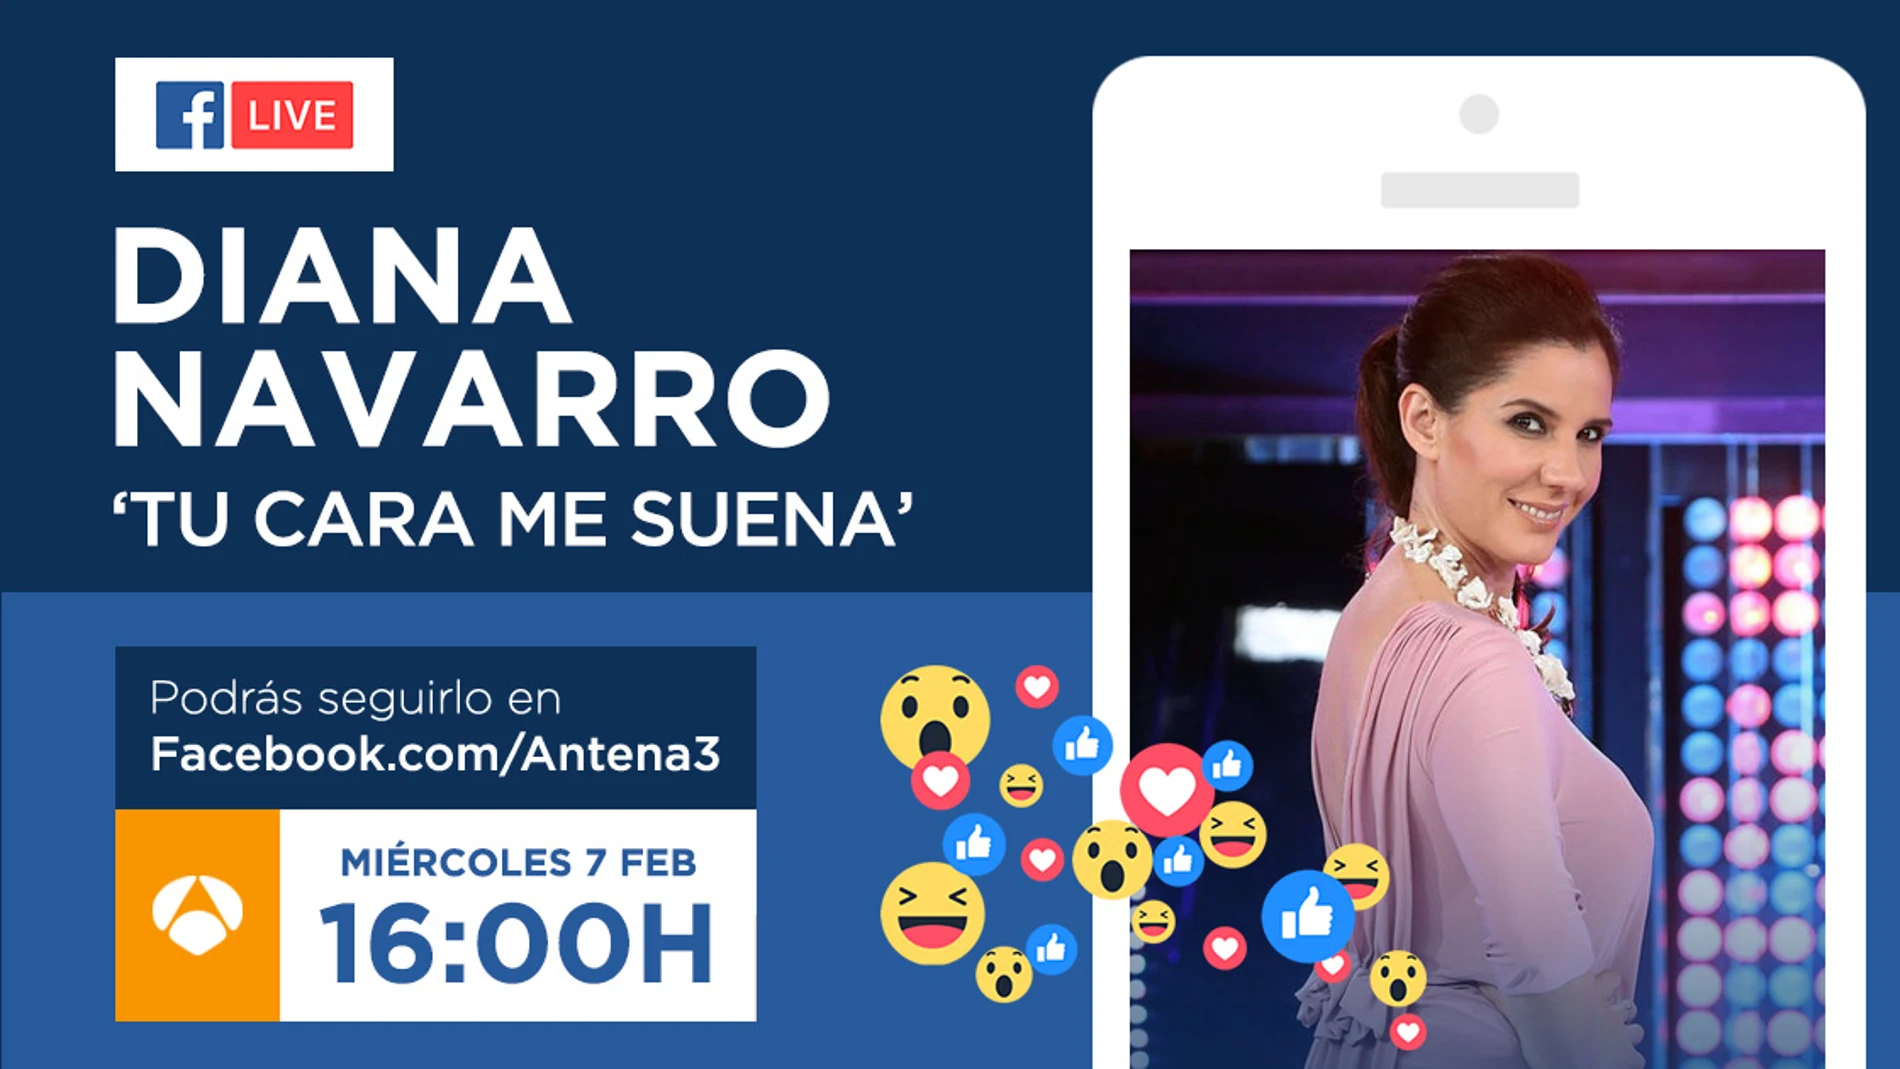 Diana Navarro responderá en directo a los seguidores de 'Tu cara me suena' el miércoles en Facebook Live